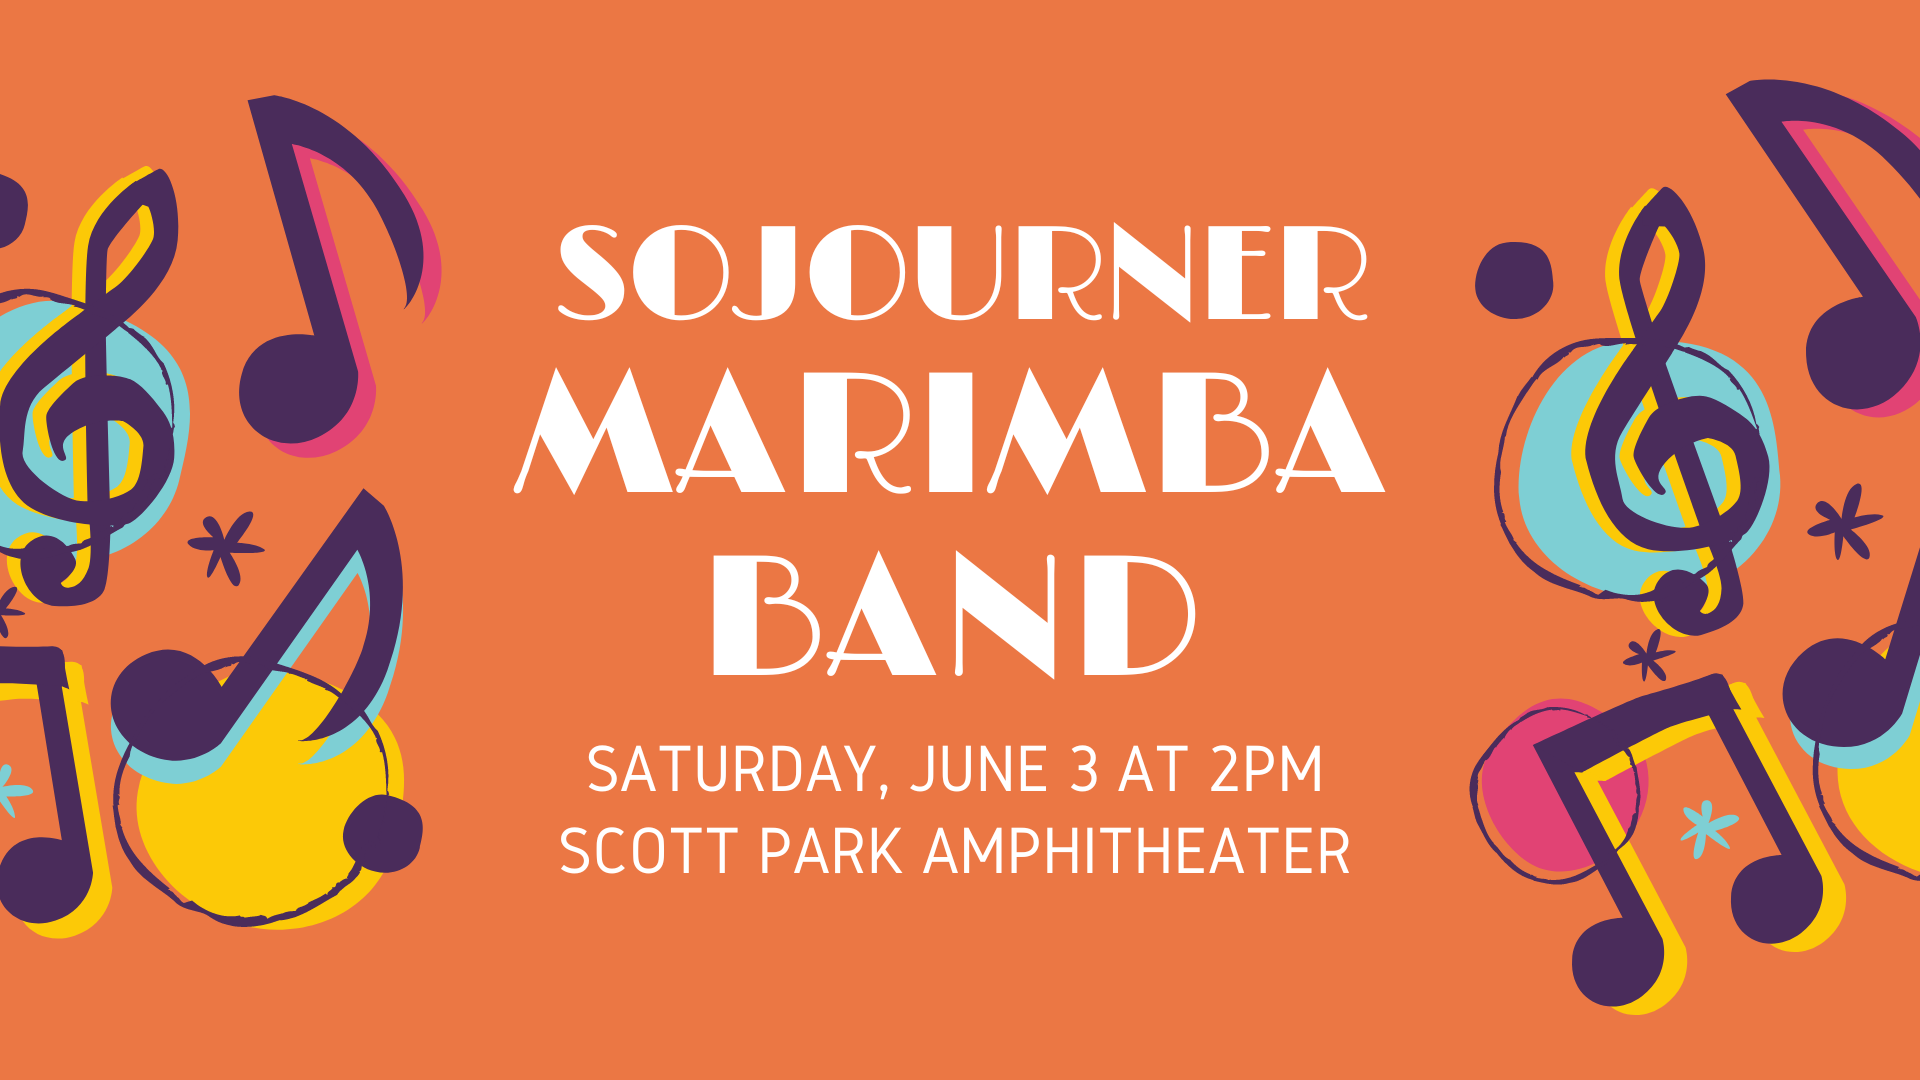 Sojourner Marimba Band